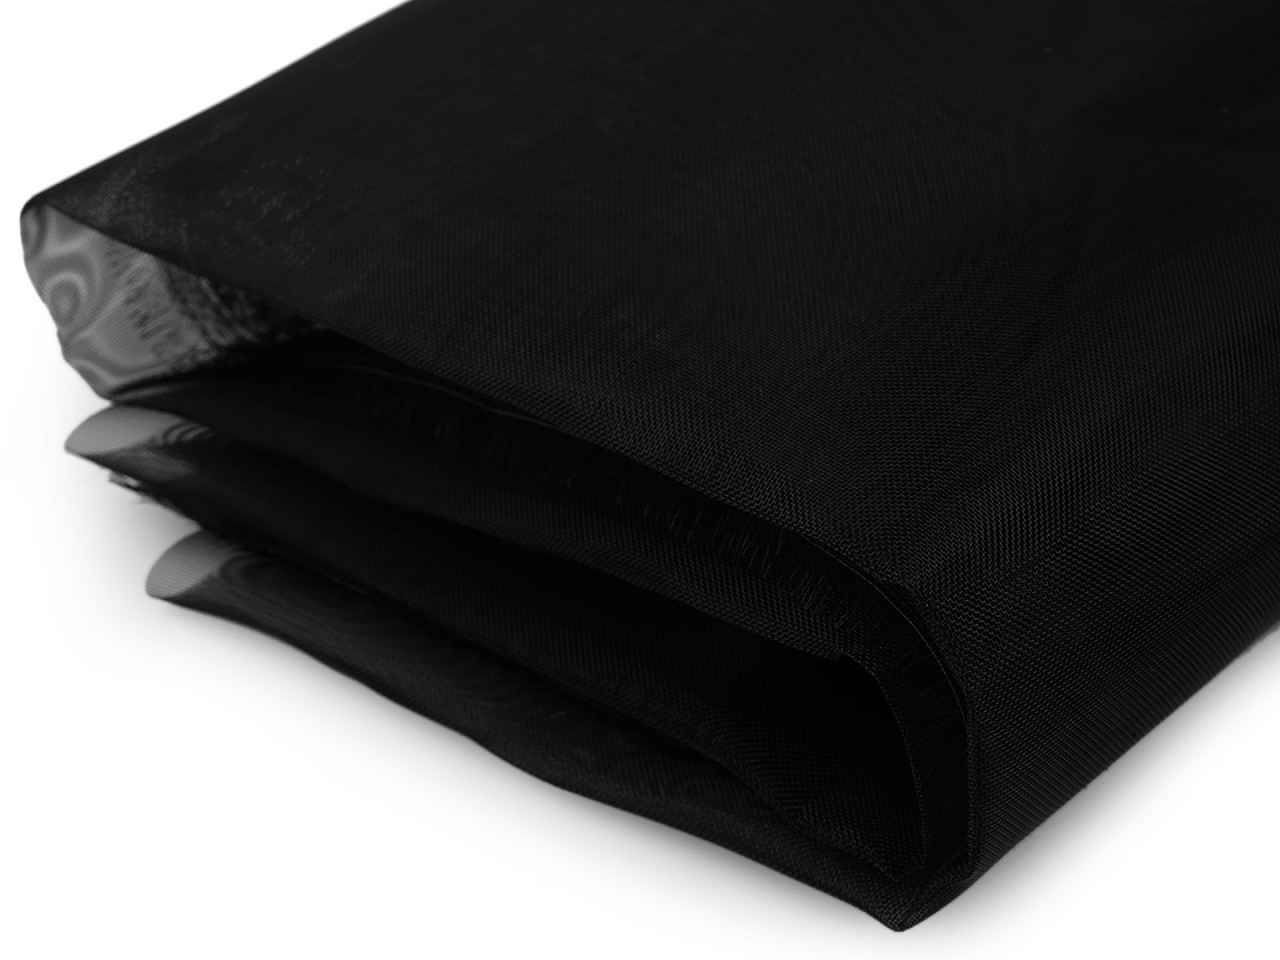 Modistická krinolína na vyztužení šatů metráž, barva 2 černá